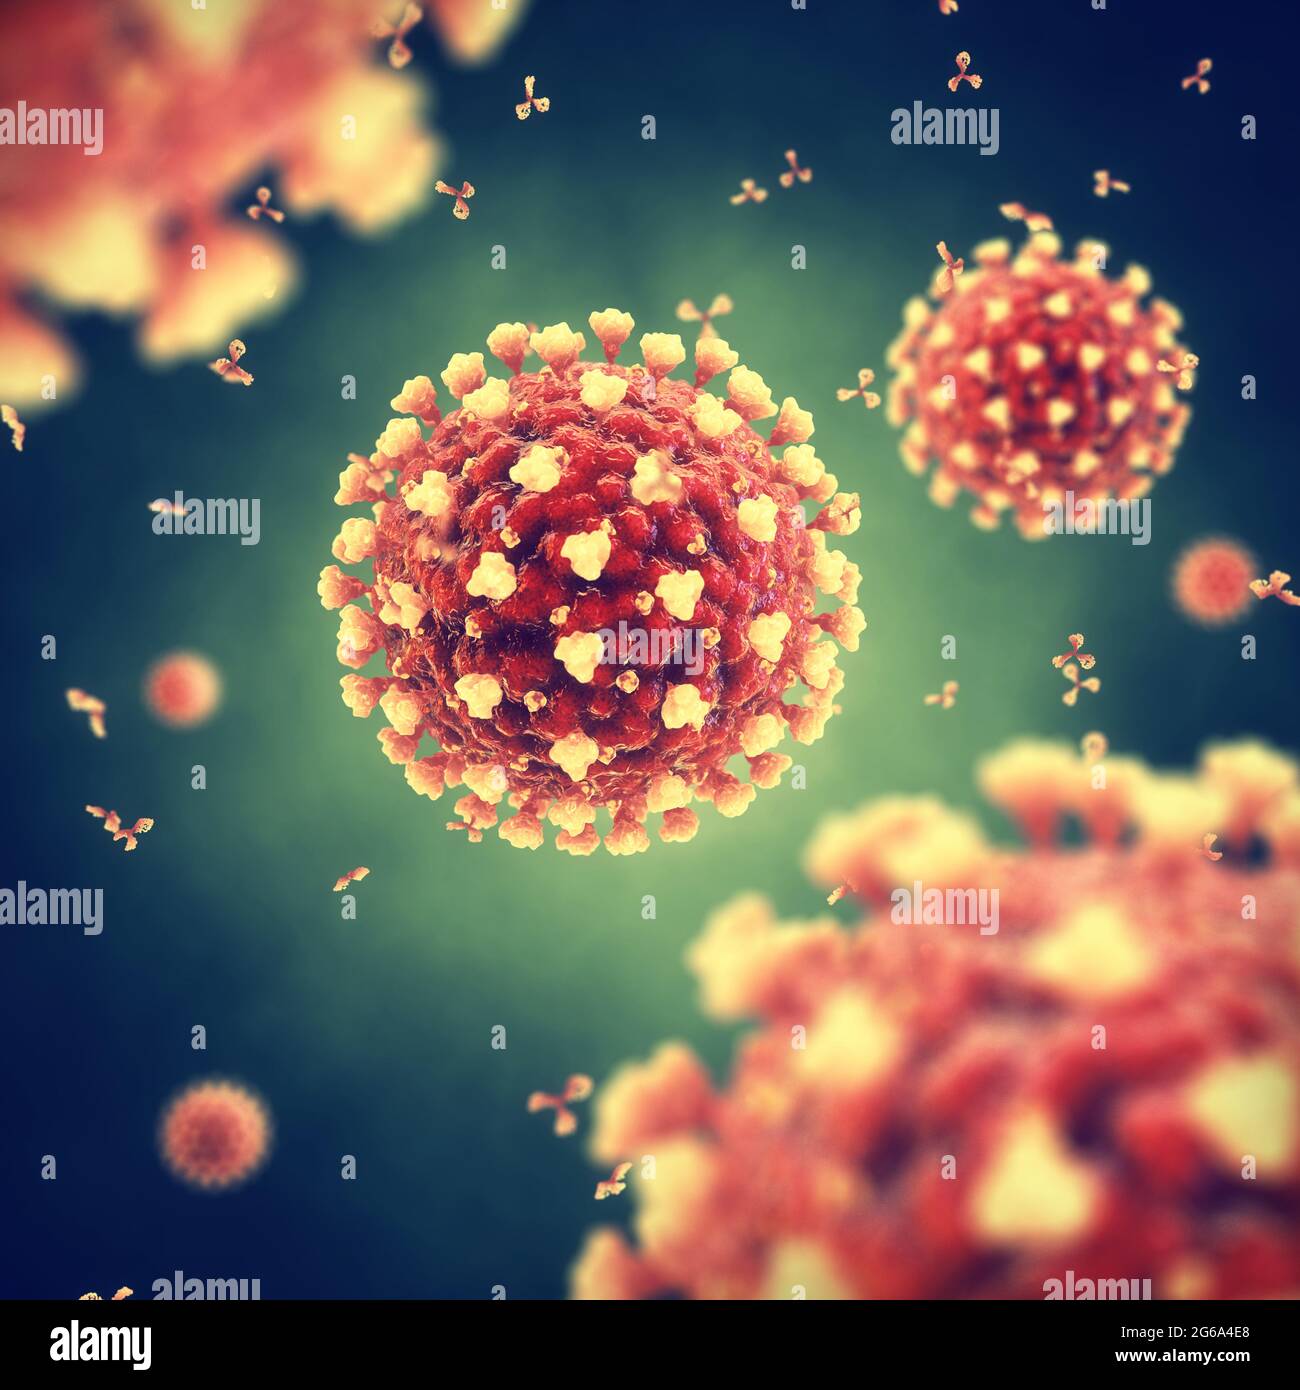 Das Coronavirus ist ein hochansteckender Virus, der ein schweres akutes atemsyndrom verursacht. Die weltweite COVID-19-Pandemie wird durch die SARS CoV-2 verursacht. Stockfoto